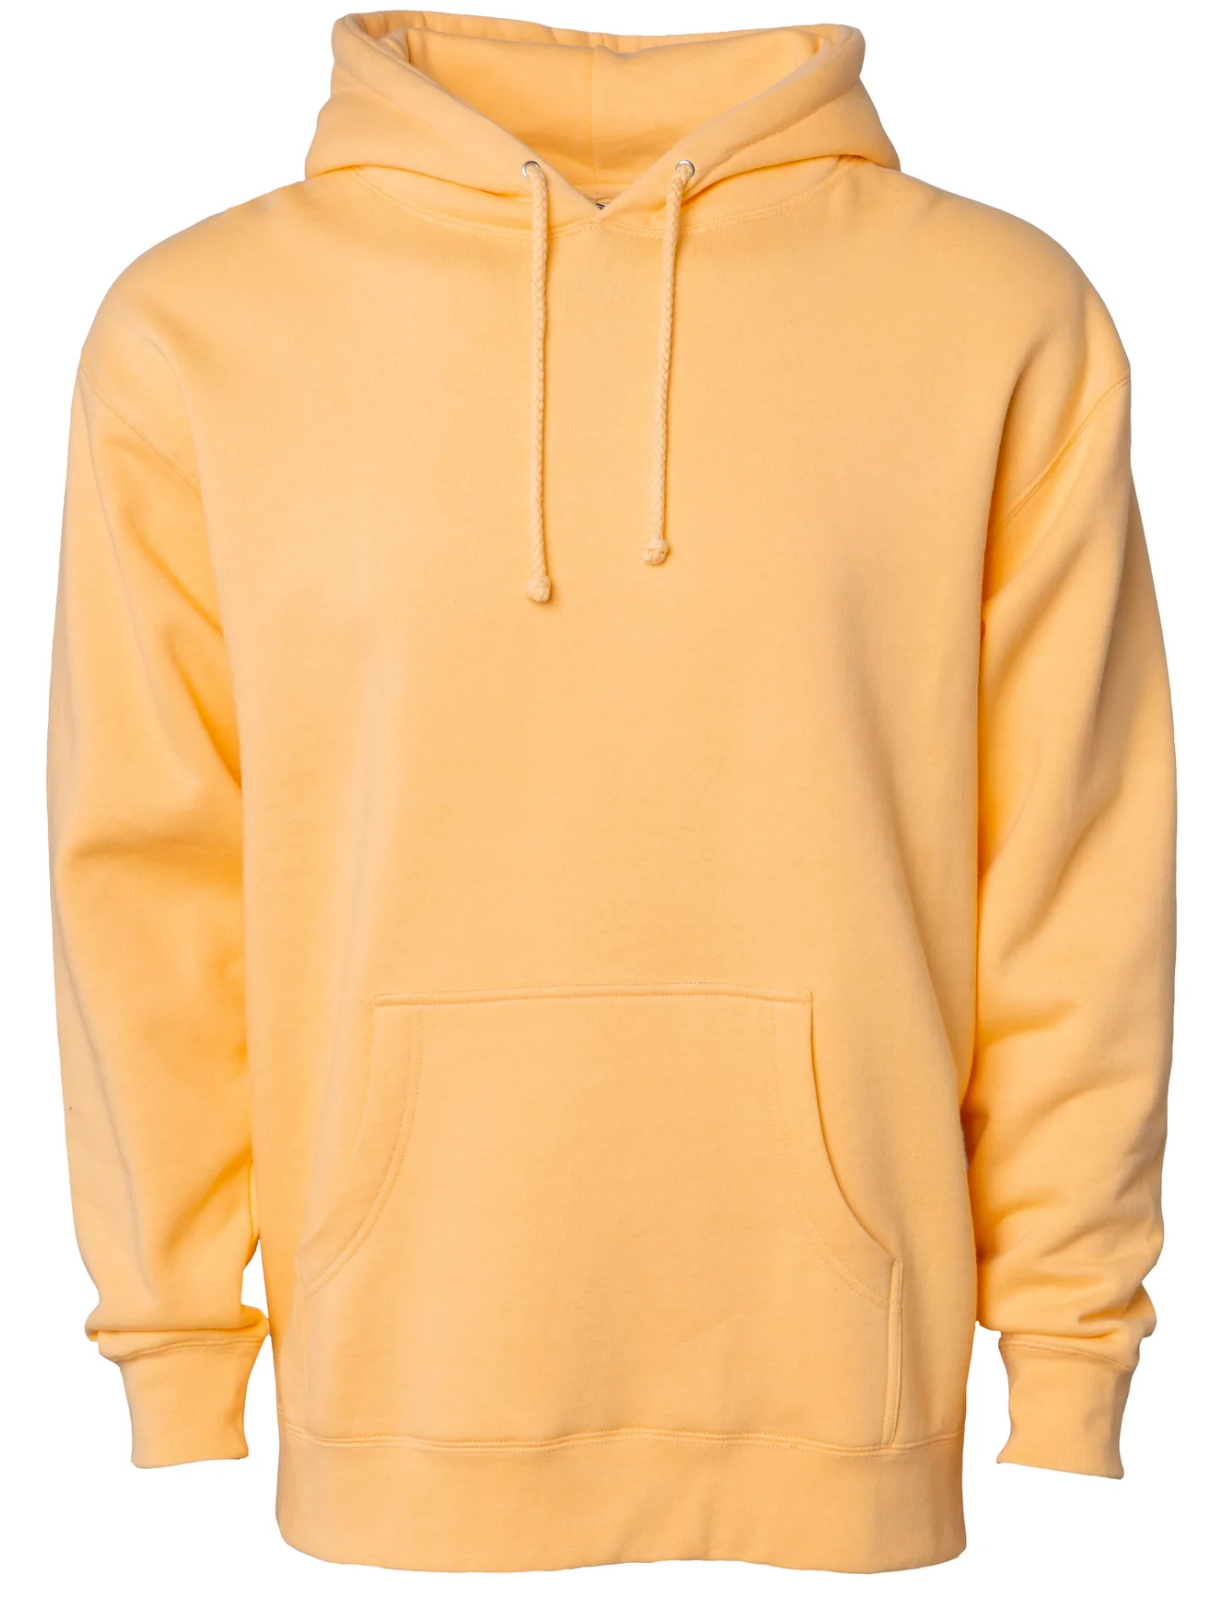 Long sleeve Hooded sweatshirt, pastel colors